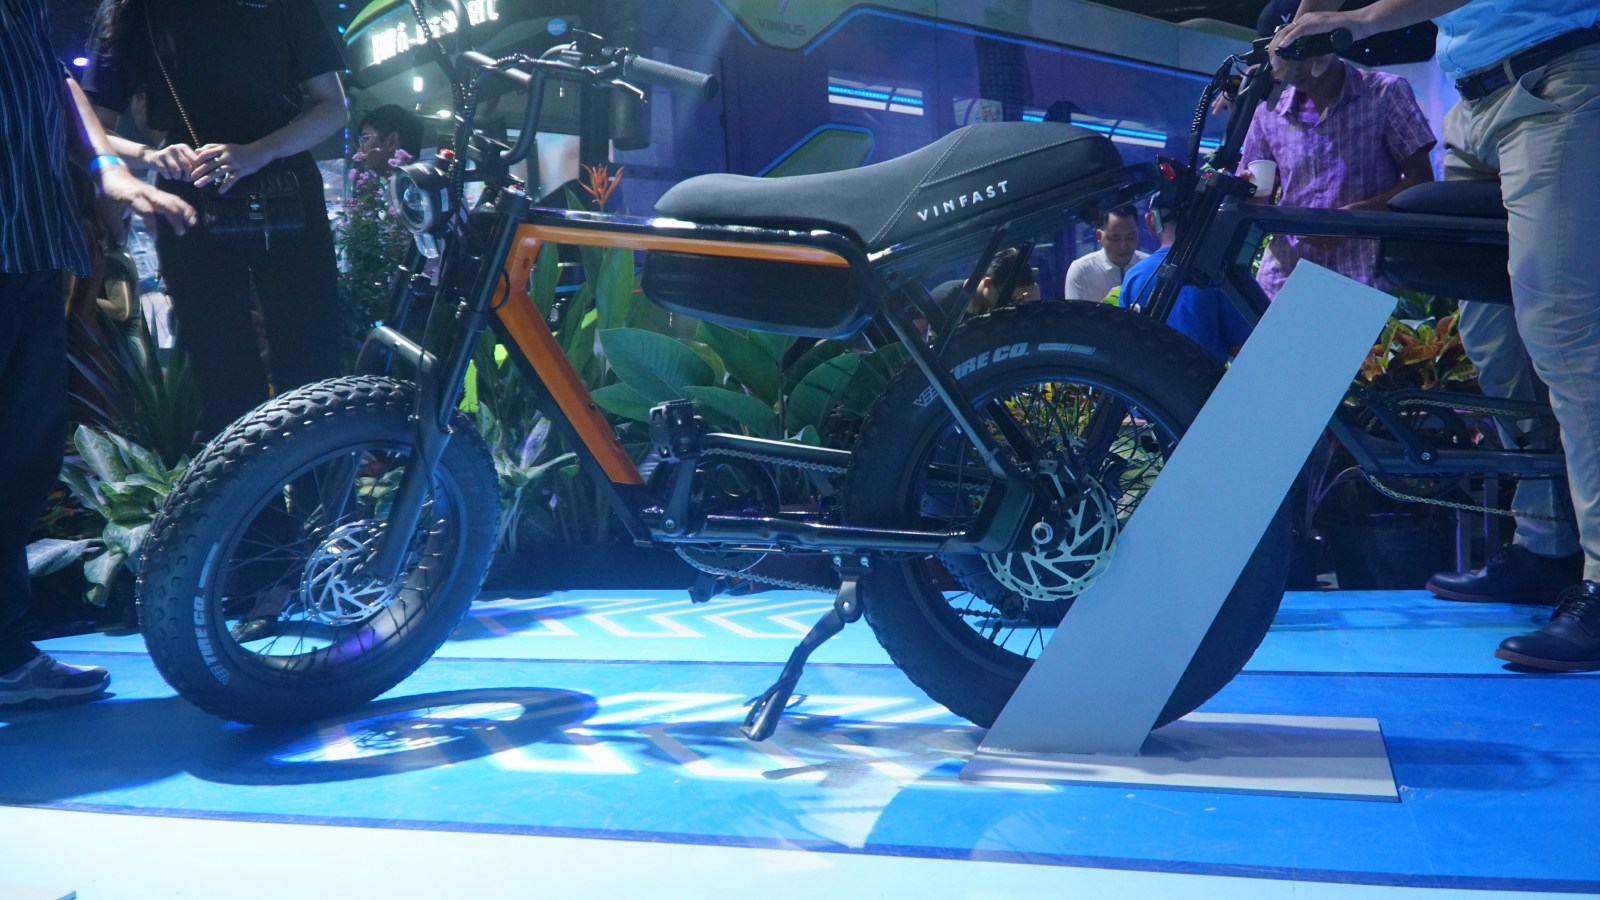 VinFast lần đầu ra mắt xe đạp điện: Dáng xe máy, tốc độ 32 km/h, pin có thể tháo rời - Ảnh 7.